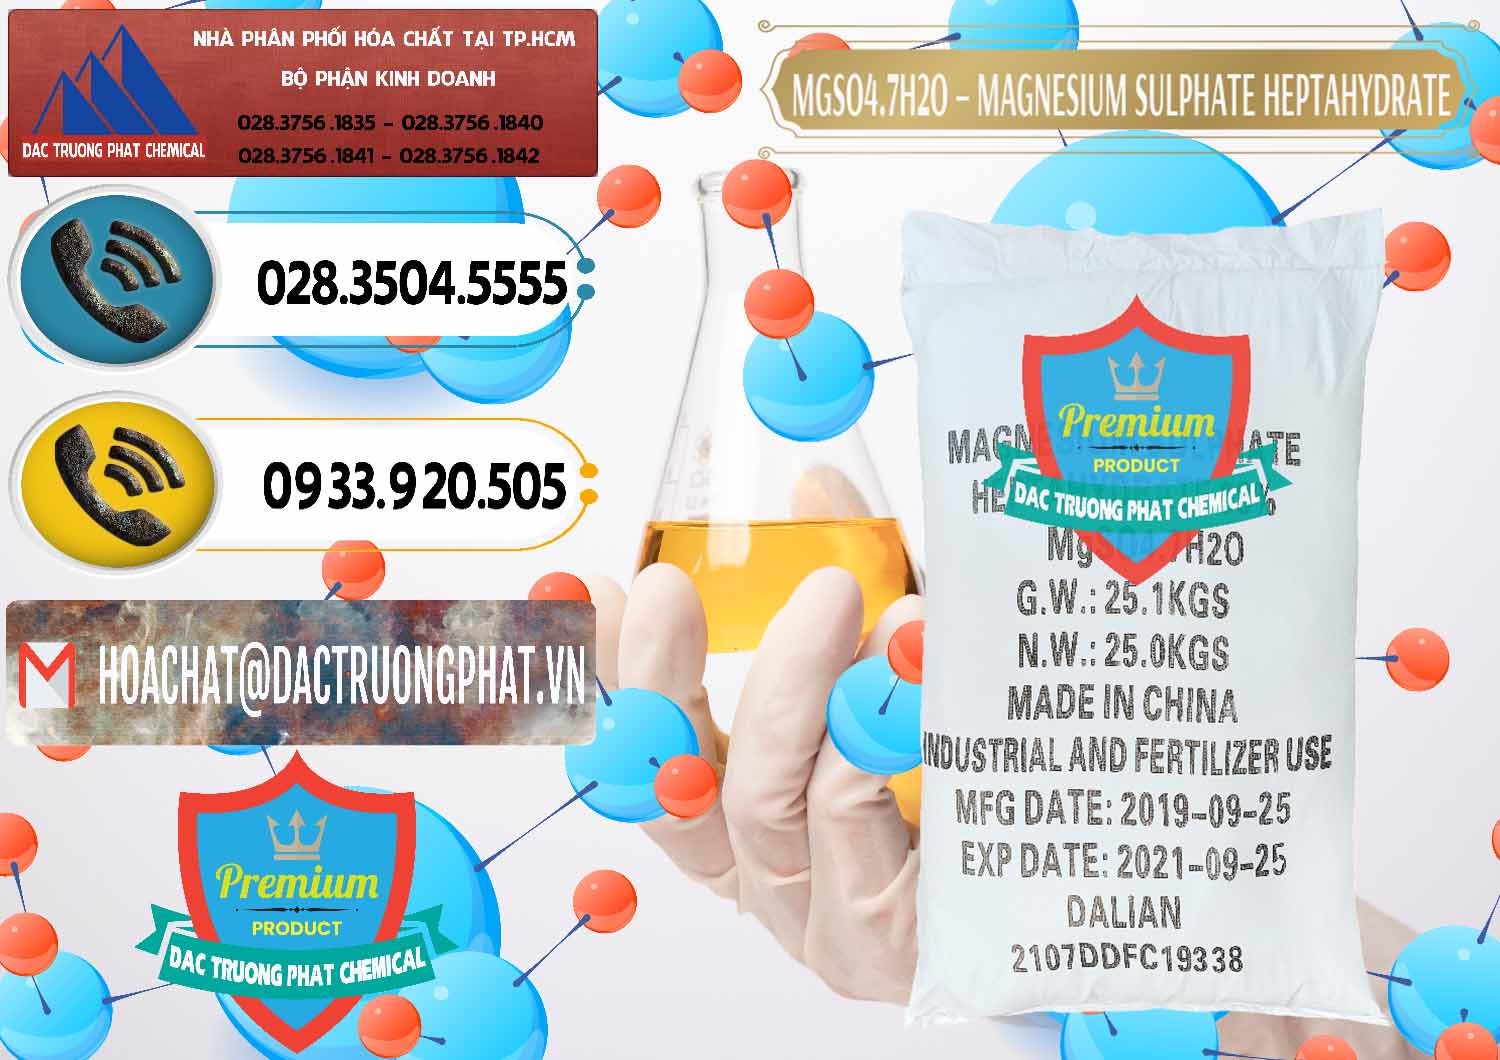 Cty bán ( cung ứng ) MGSO4.7H2O – Magnesium Sulphate Heptahydrate Trung Quốc China - 0094 - Cty cung ứng _ phân phối hóa chất tại TP.HCM - hoachatdetnhuom.vn